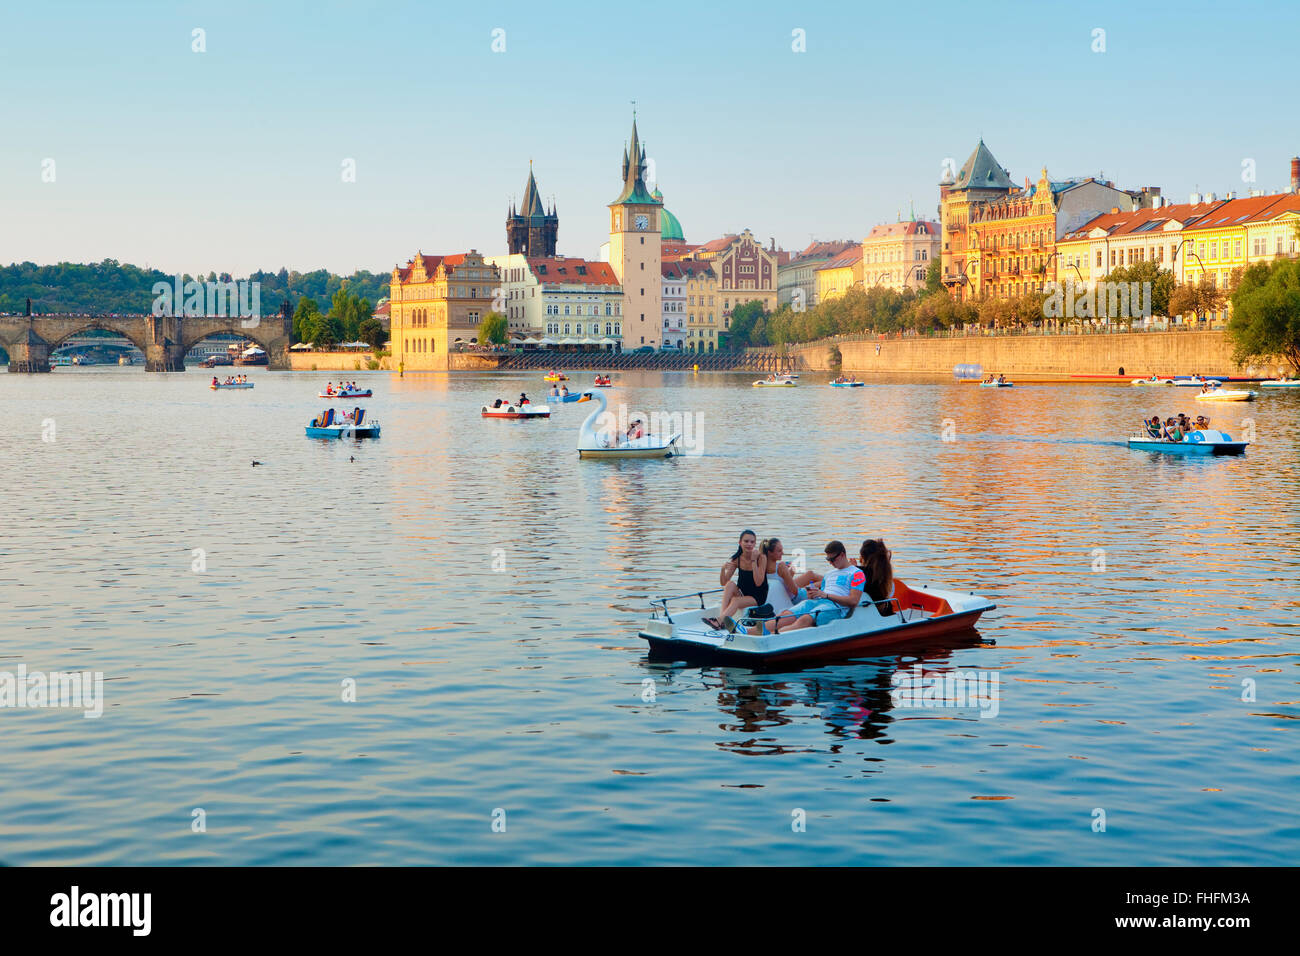 République tchèque, Prague - bateaux sur la rivière Vltava - clochers de la Vieille Ville Banque D'Images